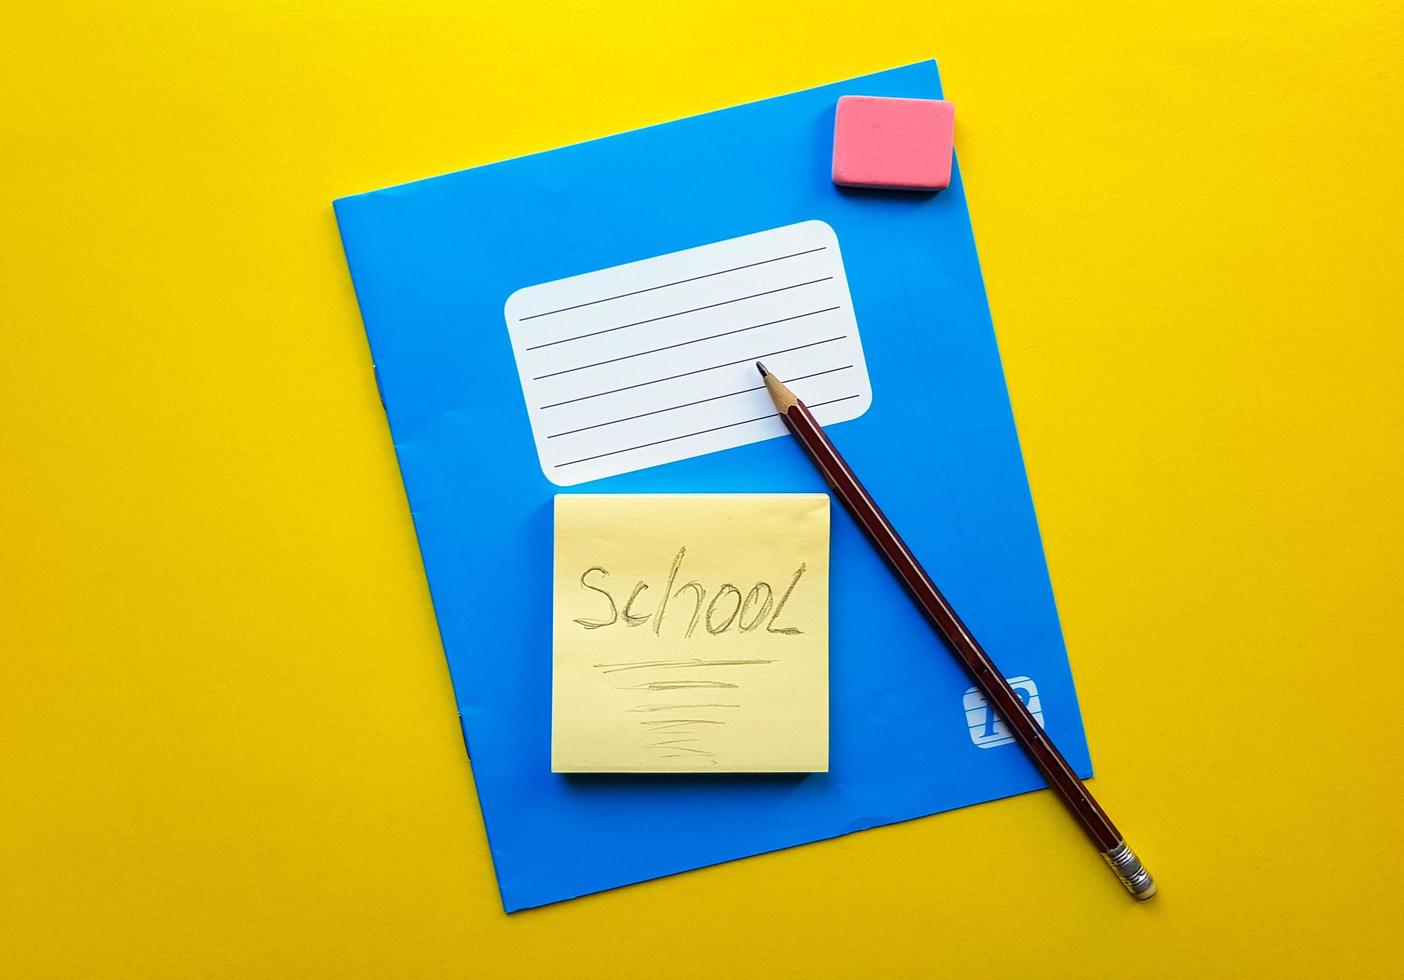 cahier bleu et bout de copie de manuel pour les matières scolaires, gomme, crayon, trombone sur fond jaune. le mot école est écrit au crayon. mise à plat, espace de copie, vue de dessus, place pour le texte. photo